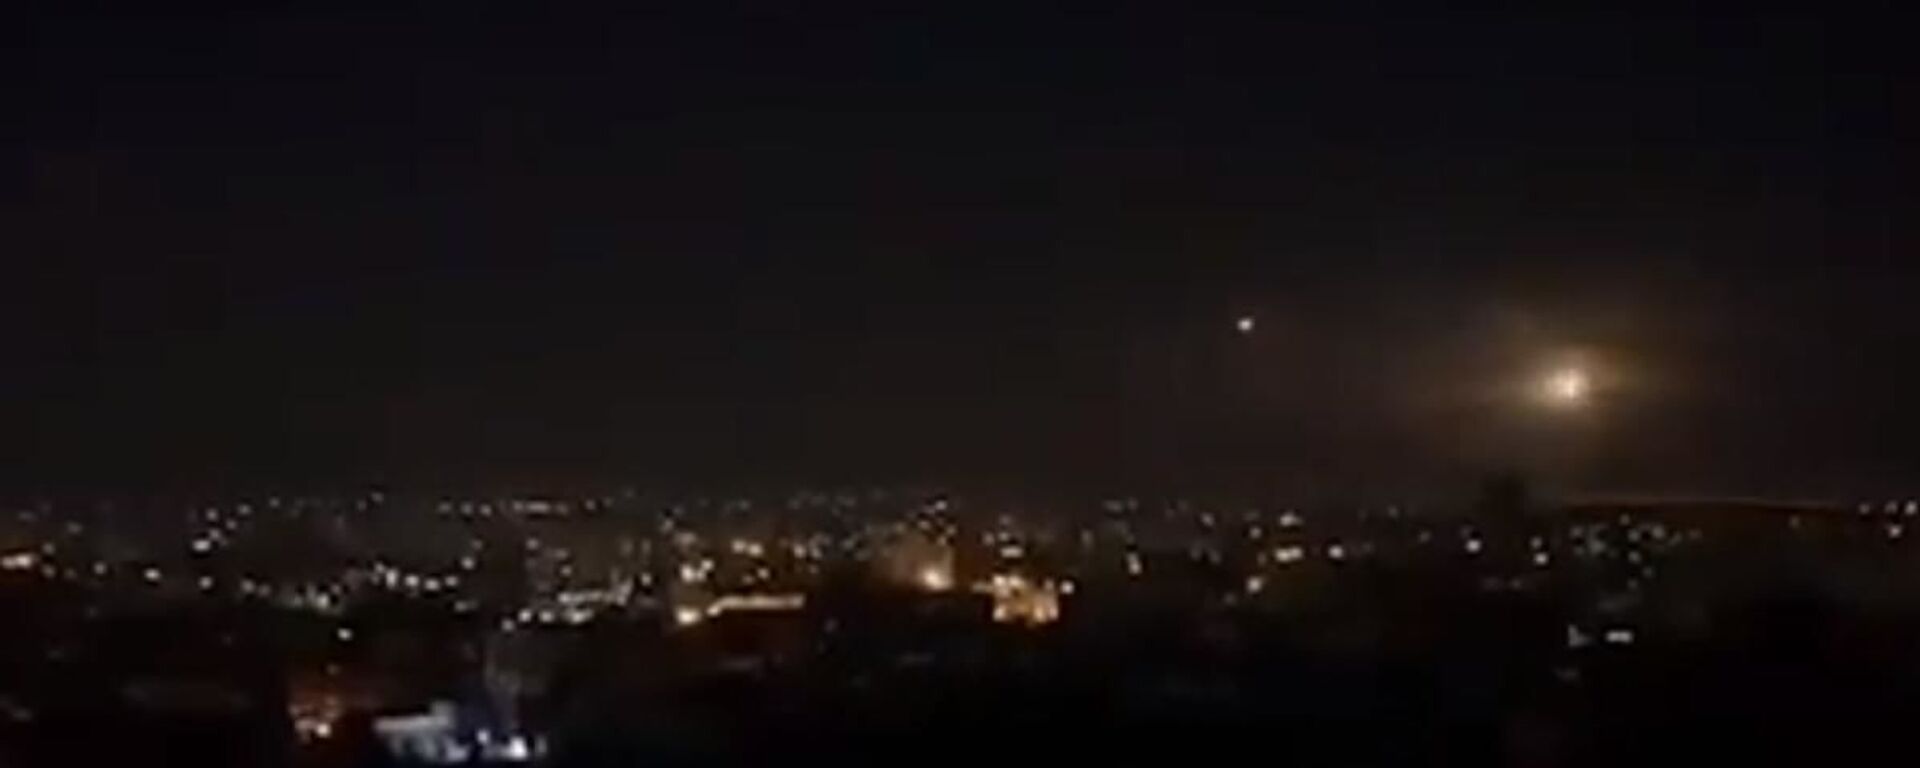 Şam'a hava saldırısı, İsrail'den Şam'a saldırı - Sputnik Türkiye, 1920, 04.11.2021